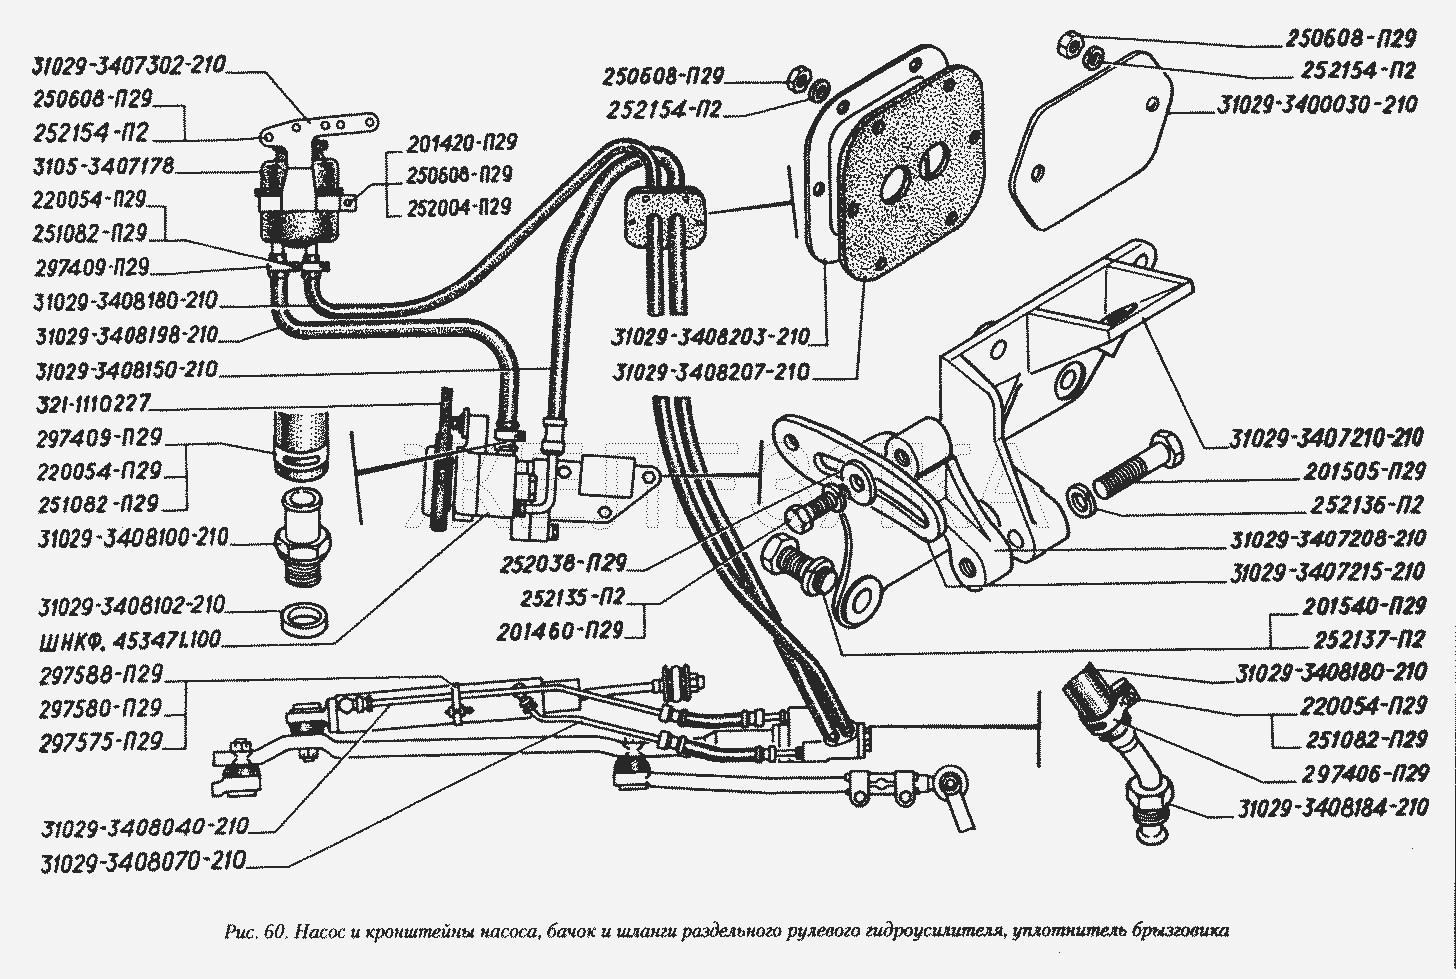 Насос и кронштейны насоса, бачок и шланги раздельного рулевого гидроусилителя, уплотнитель брызговика.  ГАЗ-3110